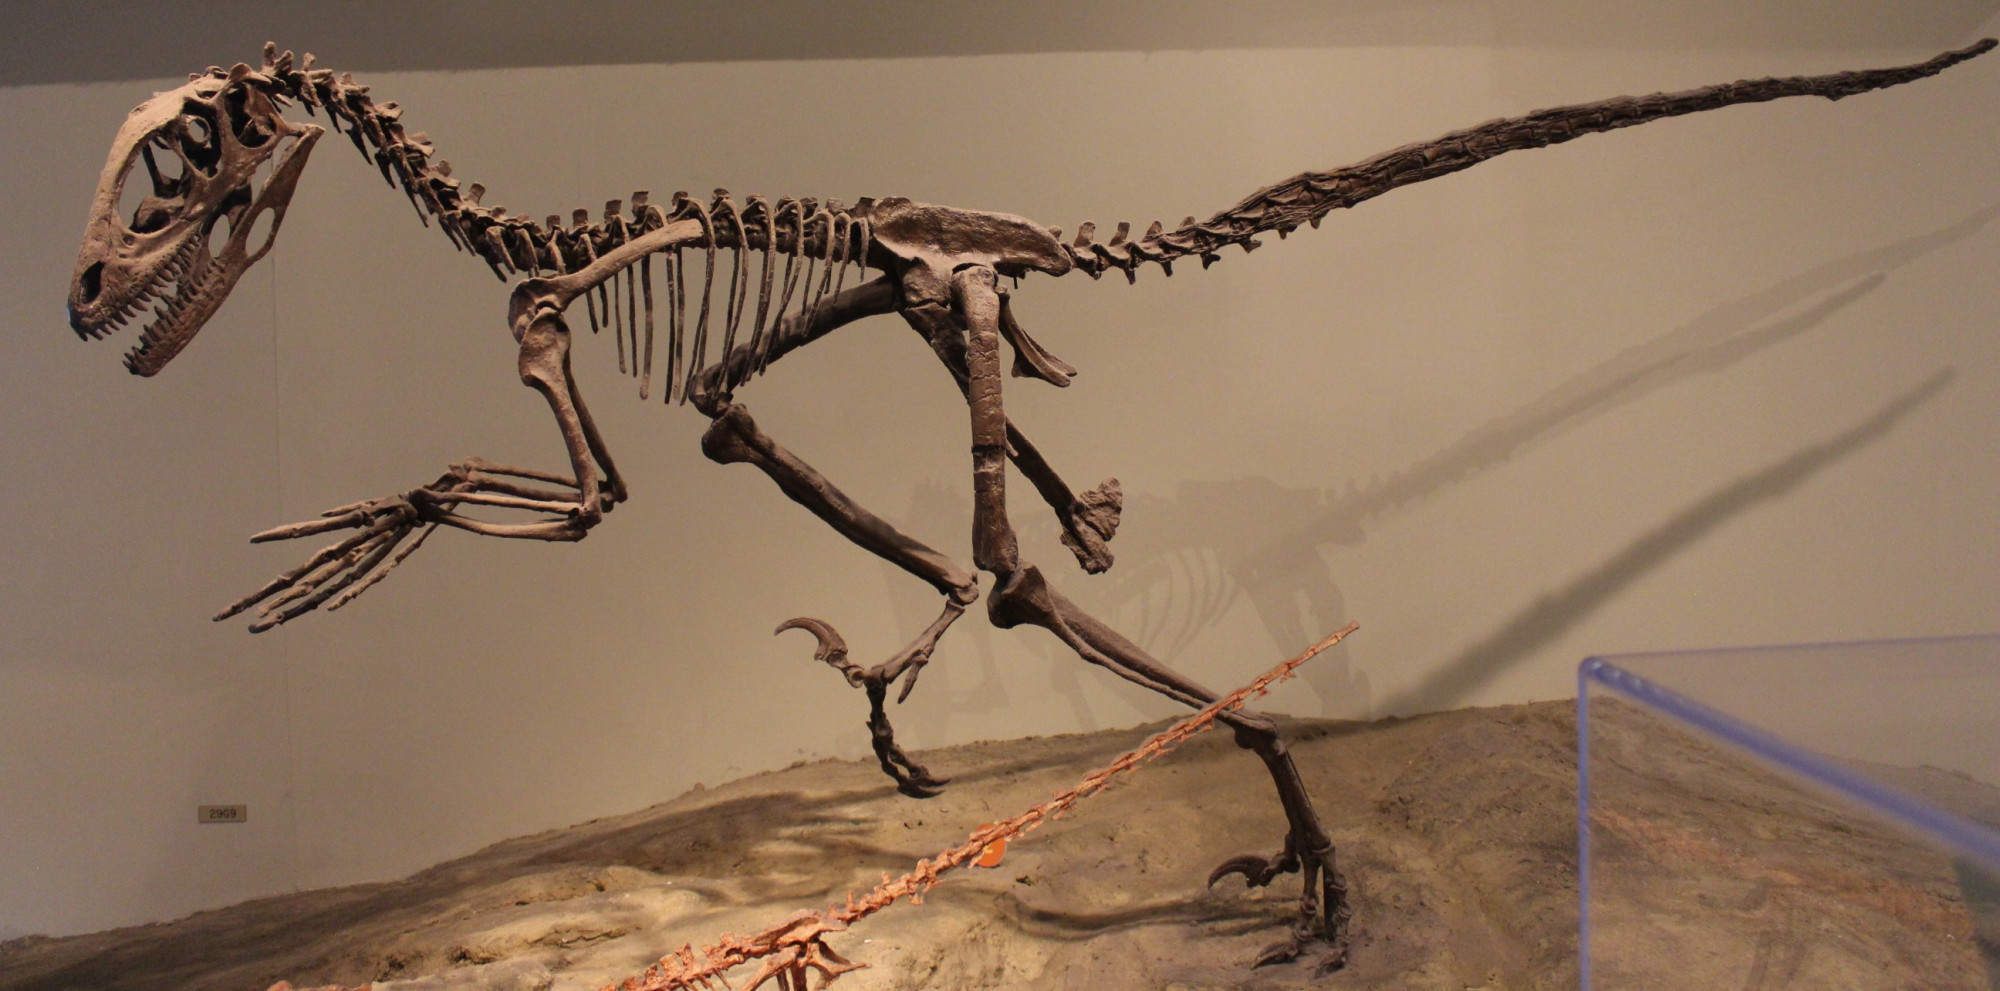 A raptorokhoz (Dromaeosauridae) tartozó Deinonychus, amiről a Jurassic Park Velociraptorát mintázták